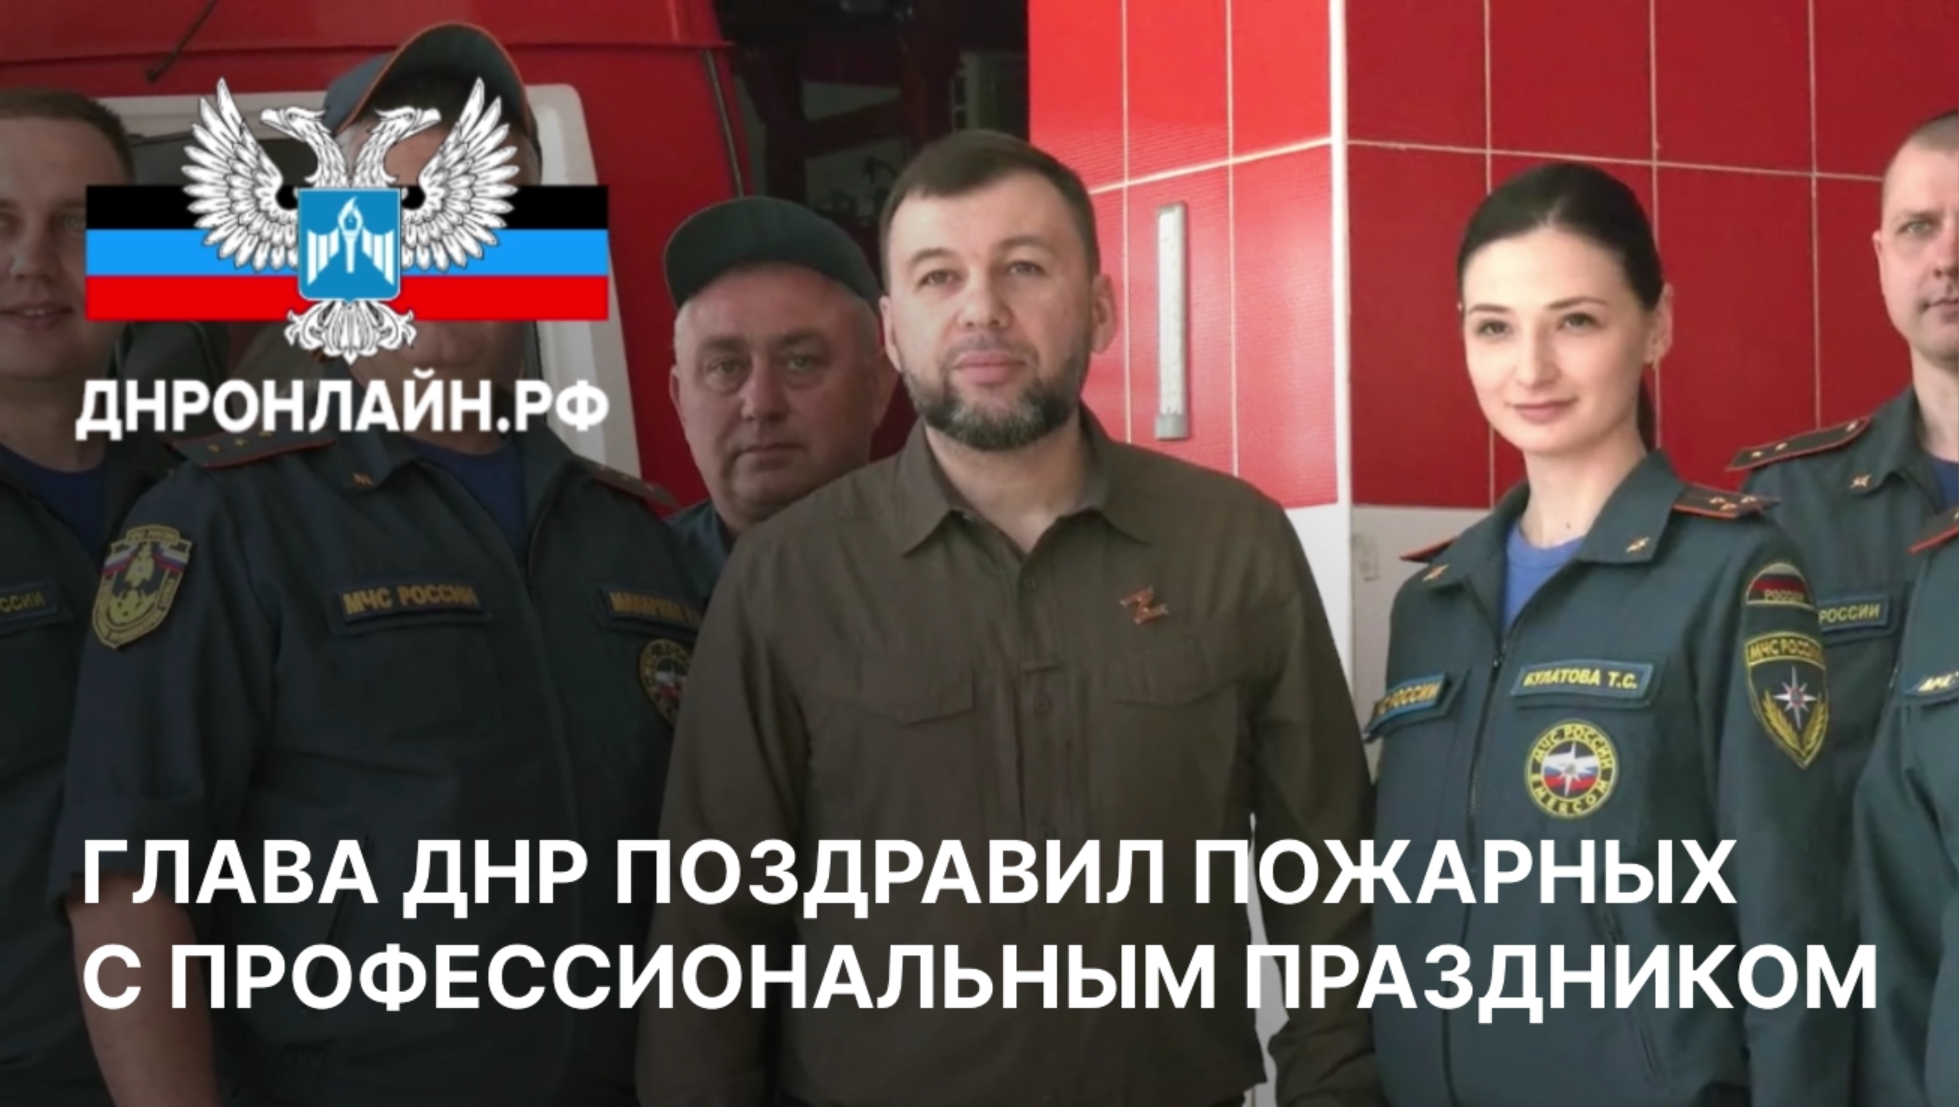 Глава ДНР поздравил пожарных с профессиональным праздником